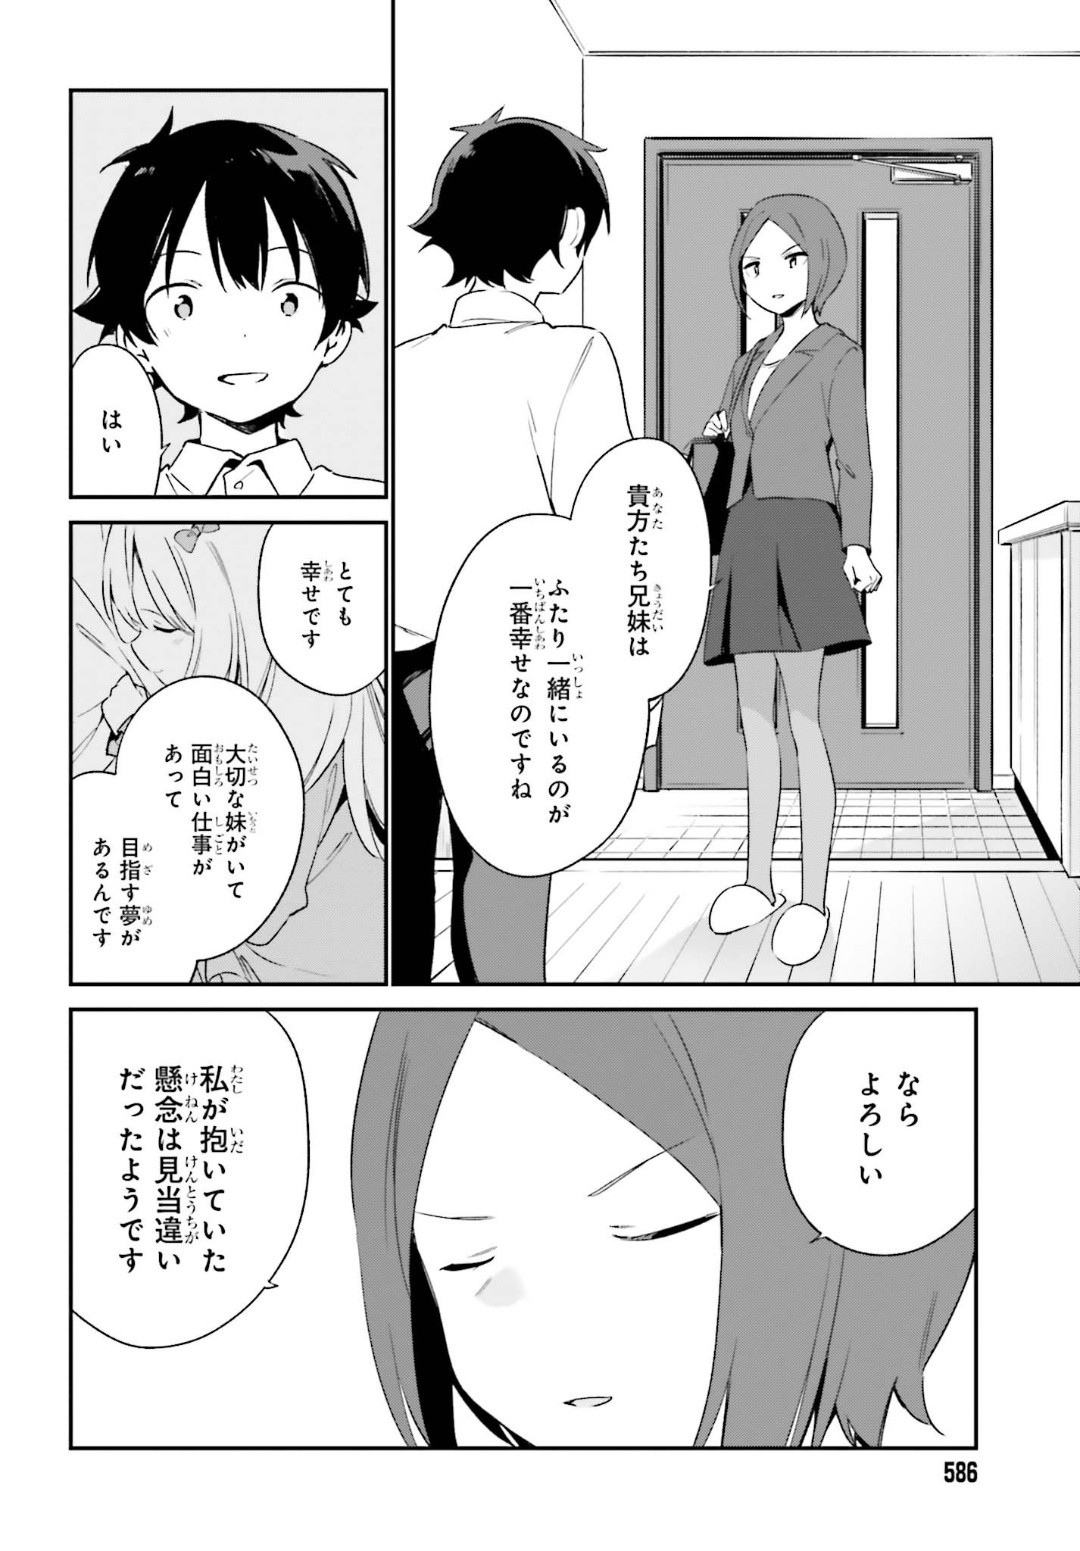 Ero Manga Sensei - Chapter 64 - Page 38